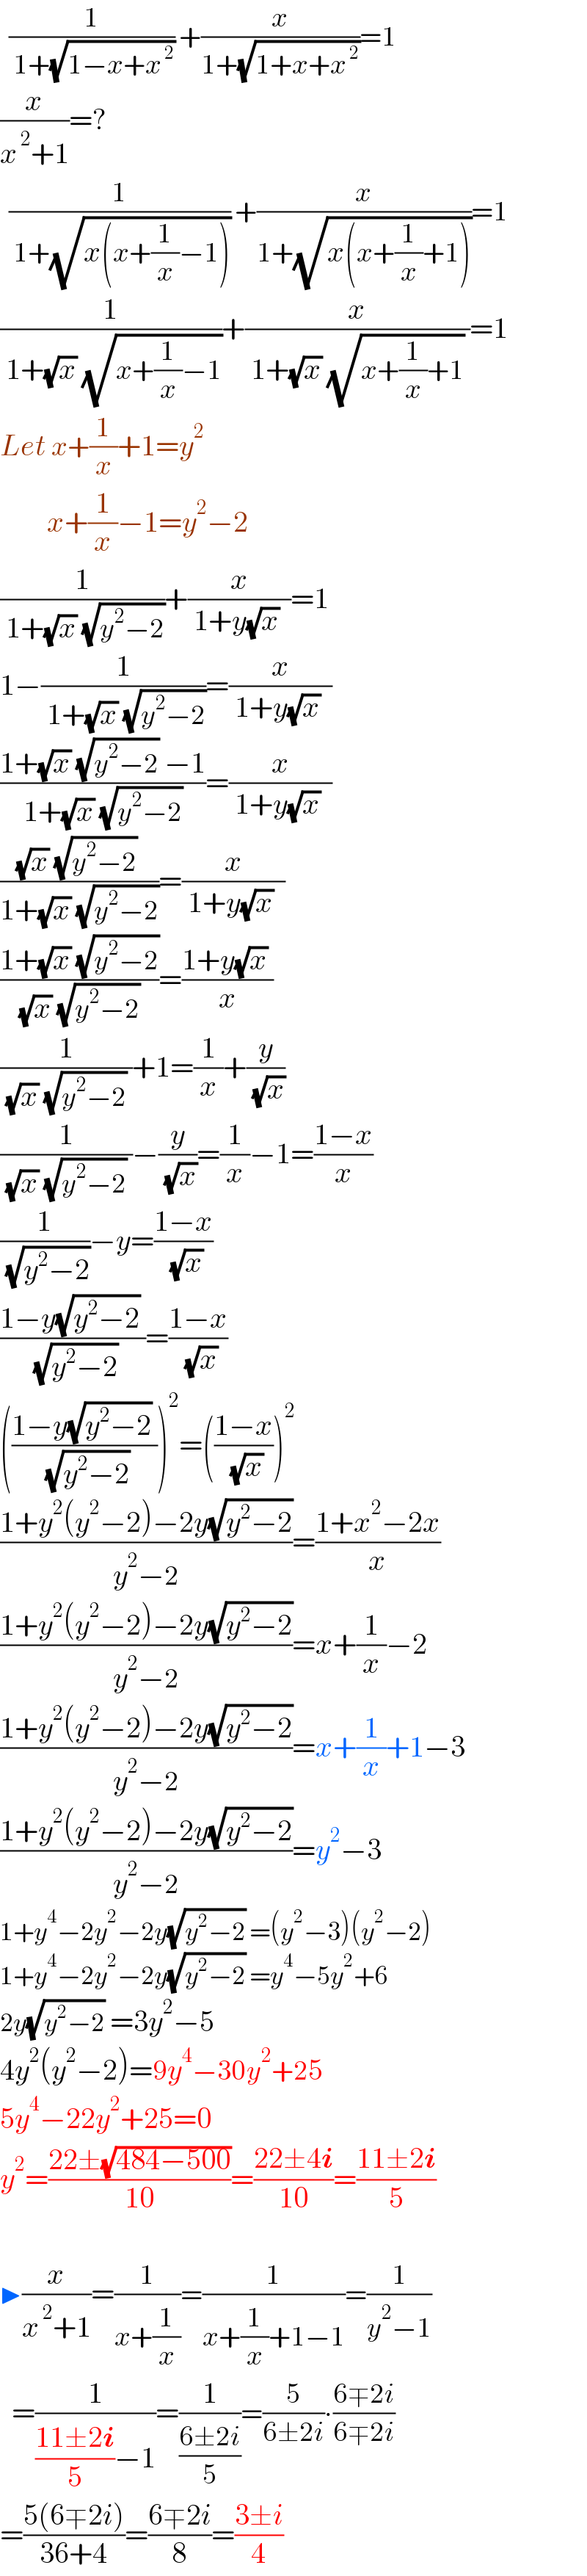   (1/( 1+(√(1−x+x^( 2) )))) +(x/(1+(√(1+x+x^( 2) ))))=1  (x/(x^( 2) +1))=?    (1/( 1+(√(x(x+(1/x)−1))))) +(x/(1+(√(x(x+(1/x)+1)))))=1  (1/( 1+(√x) (√(x+(1/x)−1))))+(x/( 1+(√x) (√(x+(1/x)+1)) ))=1  Let x+(1/x)+1=y^2           x+(1/x)−1=y^2 −2  (1/( 1+(√x) (√(y^2 −2))))+(x/( 1+y(√x)  ))=1  1−(1/( 1+(√x) (√(y^2 −2))))=(x/( 1+y(√x)  ))  ((1+(√x) (√(y^2 −2)) −1)/(1+(√x) (√(y^2 −2))))=(x/( 1+y(√x)  ))  (((√x) (√(y^2 −2)) )/(1+(√x) (√(y^2 −2))))=(x/( 1+y(√x)  ))  ((1+(√x) (√(y^2 −2)))/( (√x) (√(y^2 −2)) ))=((1+y(√x) )/x)  (1/( (√x) (√(y^2 −2)) ))+1=(1/x)+(y/( (√x)))  (1/( (√x) (√(y^2 −2)) ))−(y/( (√x)))=(1/x)−1=((1−x)/x)  (1/( (√(y^2 −2))))−y=((1−x)/( (√x)))  ((1−y(√(y^2 −2)) )/( (√(y^2 −2))))=((1−x)/( (√x)))  (((1−y(√(y^2 −2)) )/( (√(y^2 −2)))))^2 =(((1−x)/( (√x))))^2   ((1+y^2 (y^2 −2)−2y(√(y^2 −2)))/(y^2 −2))=((1+x^2 −2x)/x)  ((1+y^2 (y^2 −2)−2y(√(y^2 −2)))/(y^2 −2))=x+(1/x)−2  ((1+y^2 (y^2 −2)−2y(√(y^2 −2)))/(y^2 −2))=x+(1/x)+1−3  ((1+y^2 (y^2 −2)−2y(√(y^2 −2)))/(y^2 −2))=y^2 −3  1+y^4 −2y^2 −2y(√(y^2 −2)) =(y^2 −3)(y^2 −2)  1+y^4 −2y^2 −2y(√(y^2 −2)) =y^4 −5y^2 +6  2y(√(y^2 −2)) =3y^2 −5  4y^2 (y^2 −2)=9y^4 −30y^2 +25  5y^4 −22y^2 +25=0  y^2 =((22±(√(484−500)))/(10))=((22±4i)/(10))=((11±2i)/5)      ▶(x/(x^( 2) +1))=(1/(x+(1/x)))=(1/(x+(1/x)+1−1))=(1/(y^2 −1))    =(1/(((11±2i)/5)−1))=(1/((6±2i)/5))=(5/(6±2i))∙((6∓2i)/(6∓2i))  =((5(6∓2i))/(36+4))=((6∓2i)/8)=((3±i)/4)  